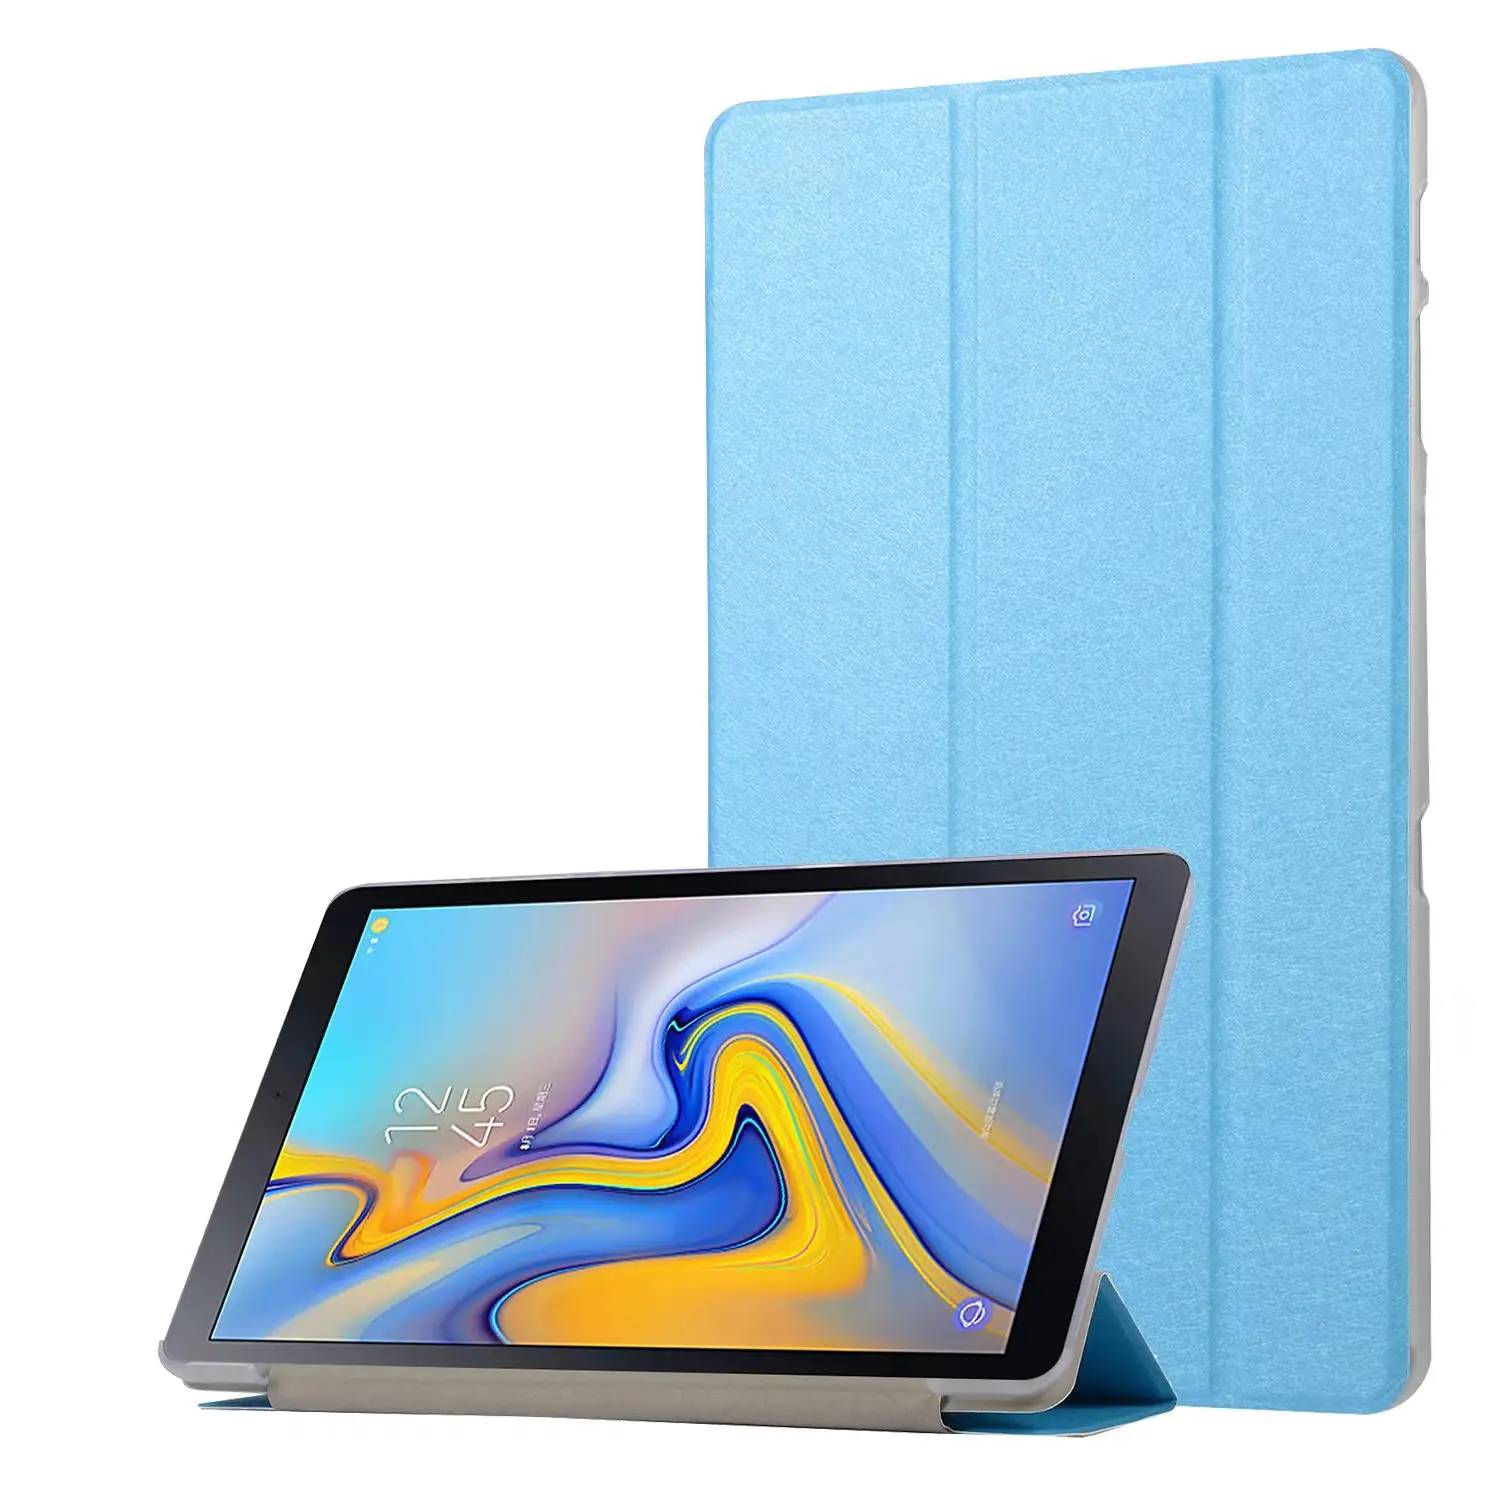 Casing Tablet Kulit Lipat PU Tekstur Sutra Lipat Tiga Ultra Ramping untuk Samsung Galaxy Tab A 10.5 SM-T590 T595 T597